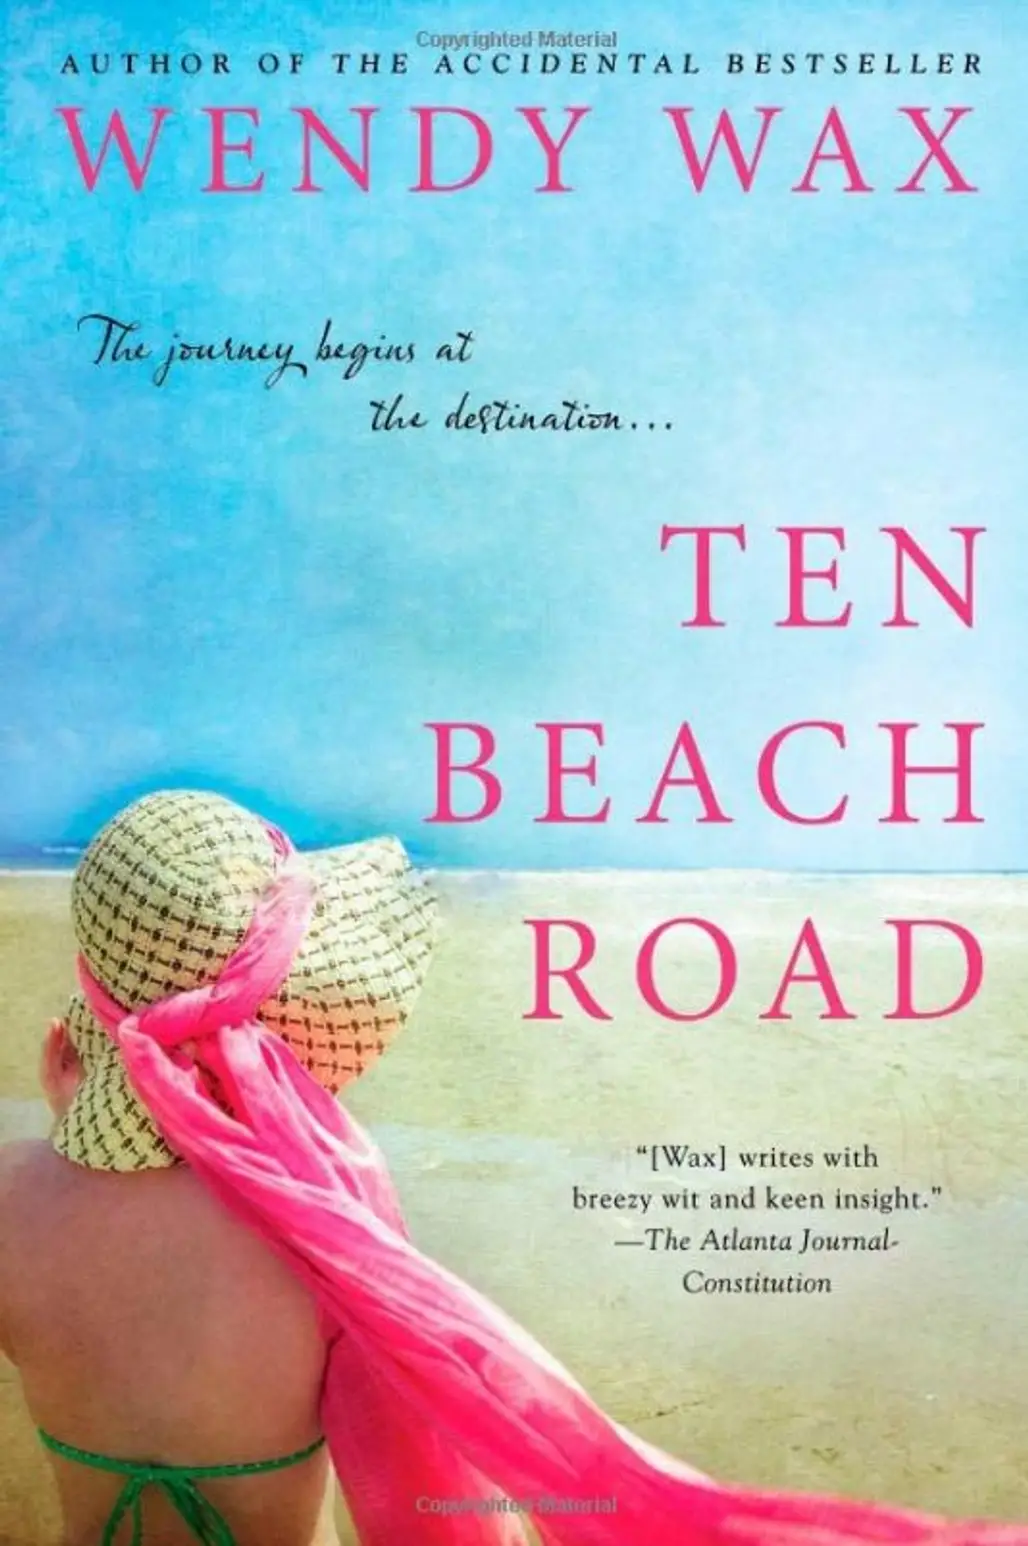 “Ten Beach Road”